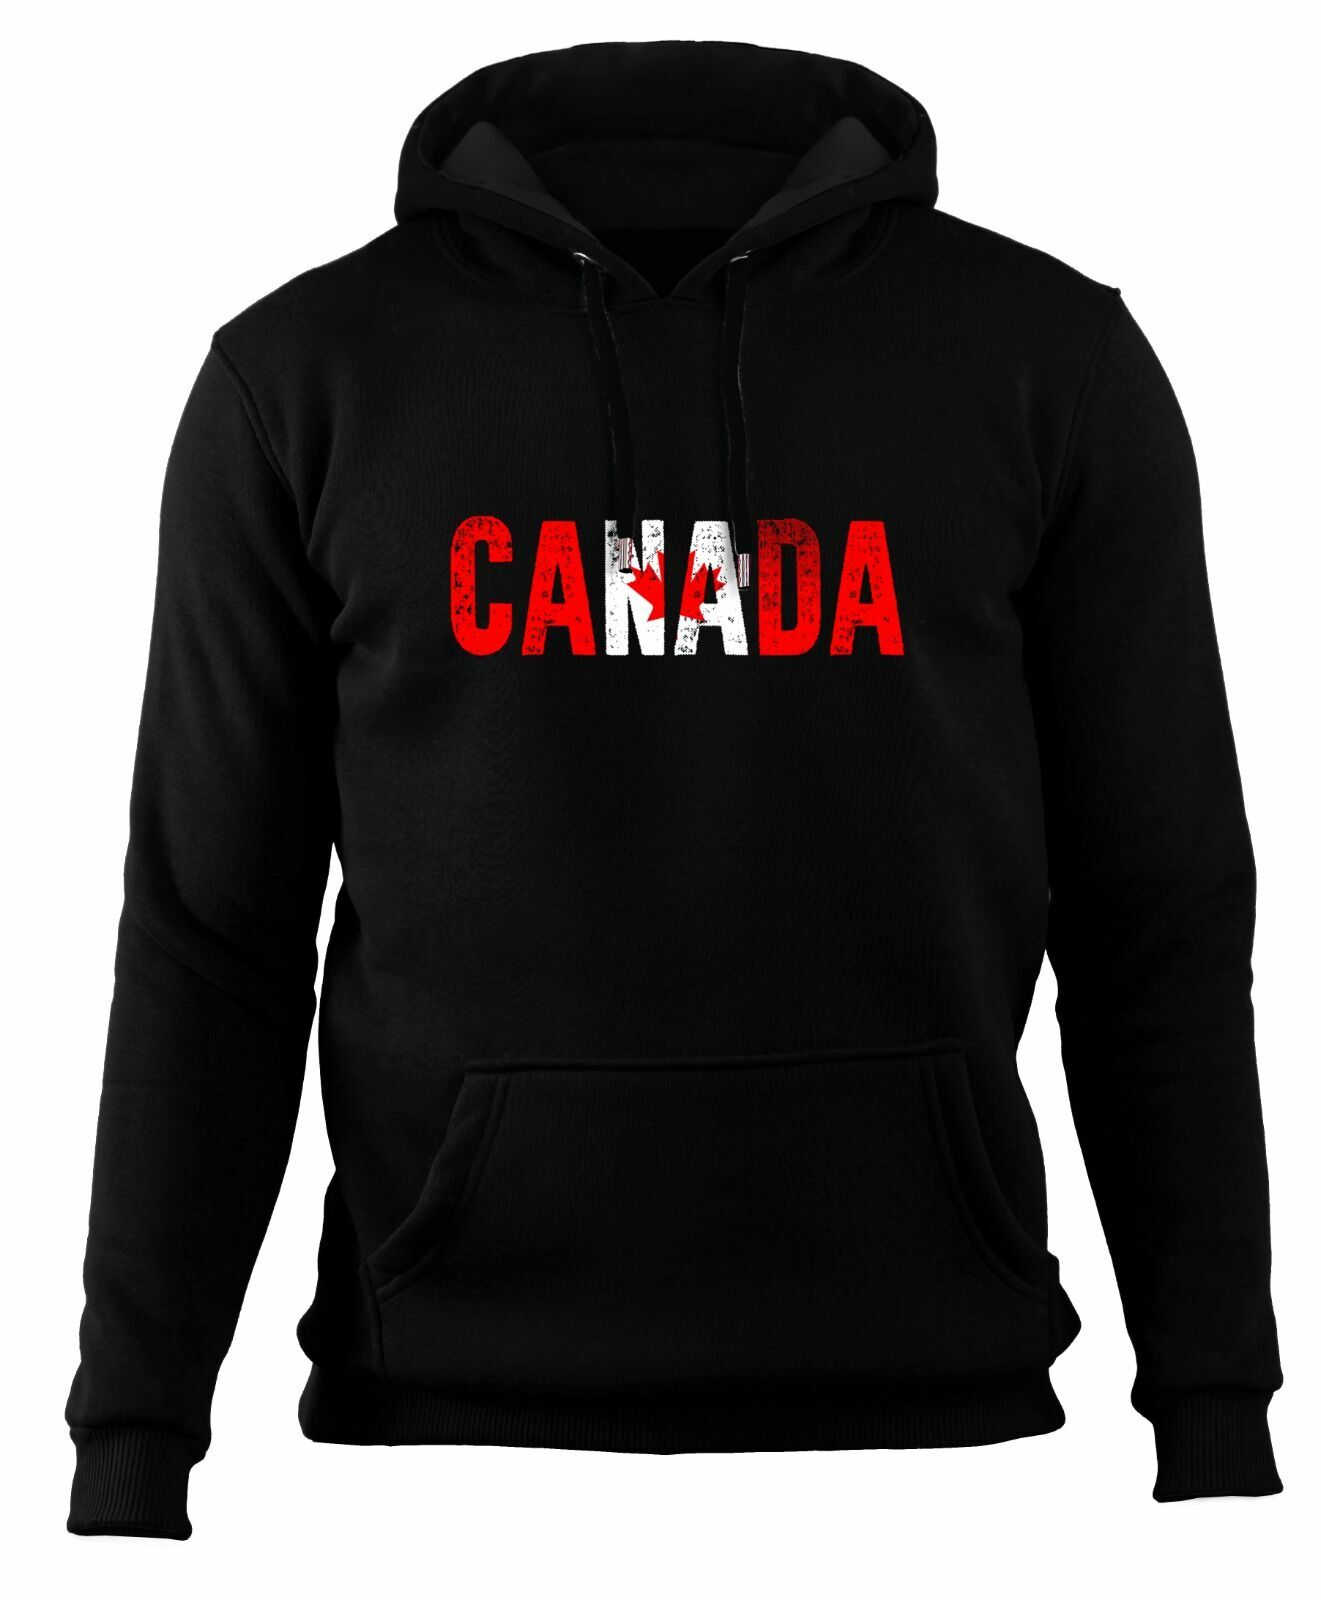 Canada (Kanada) - Flag Sweatshirt